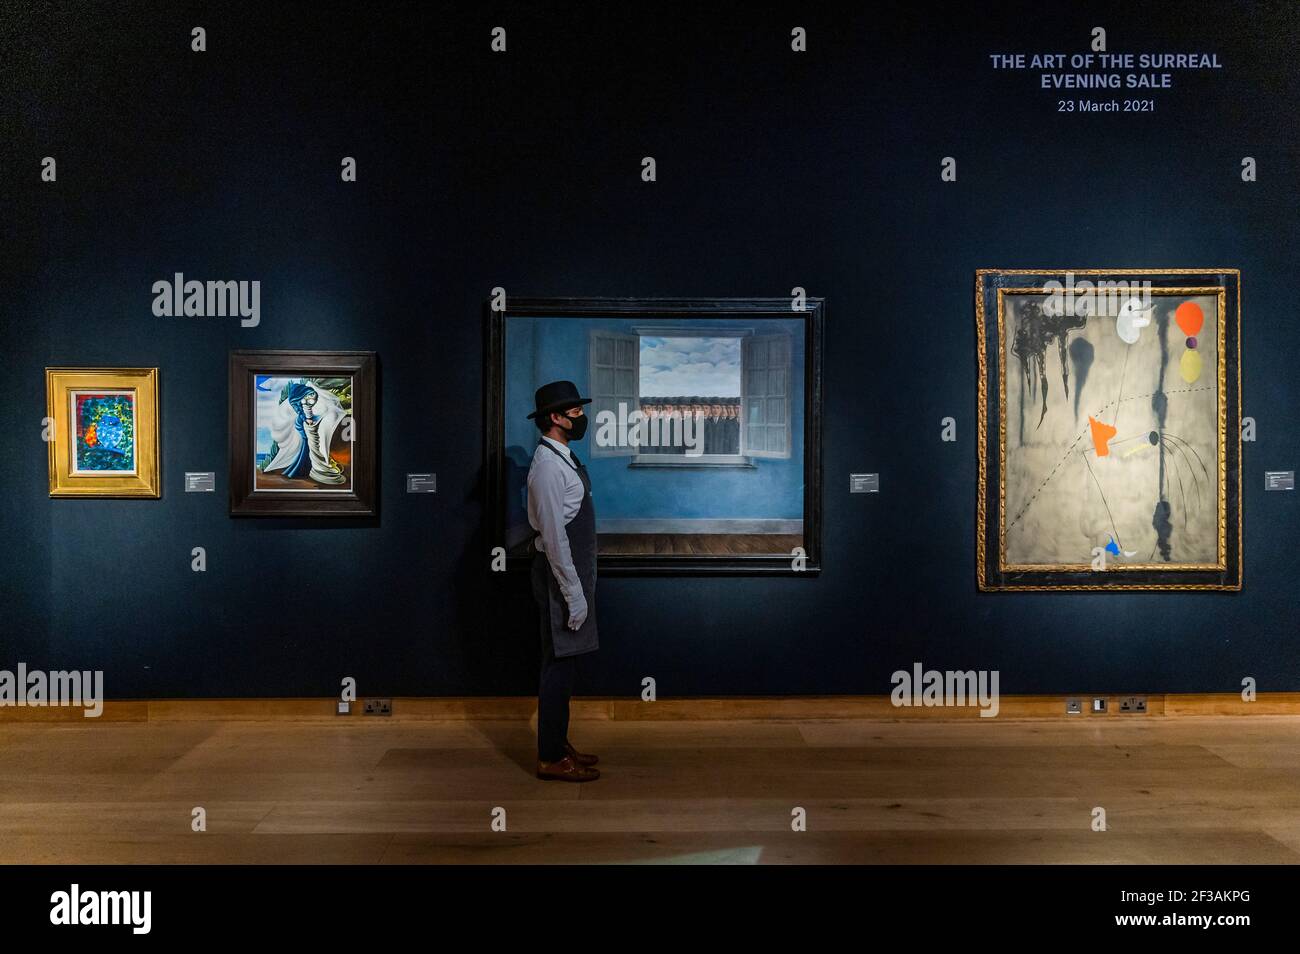 Londres, Royaume-Uni. 16 mars 2021. René Magritte, le mois des vendanges, peint en 1959, estimation : £10,000,000-15,000,000 avec Joan Miró, peinture, peint en 1925, estimation: £9,000,000-14,000,000 - derrière des portes fermées: Les préparatifs ont lieu chez christie's avant la vente en direct en soirée d'art du XXe siècle et l'art de la vente surréaliste le 23 mars crédit: Guy Bell/Alay Live News Banque D'Images